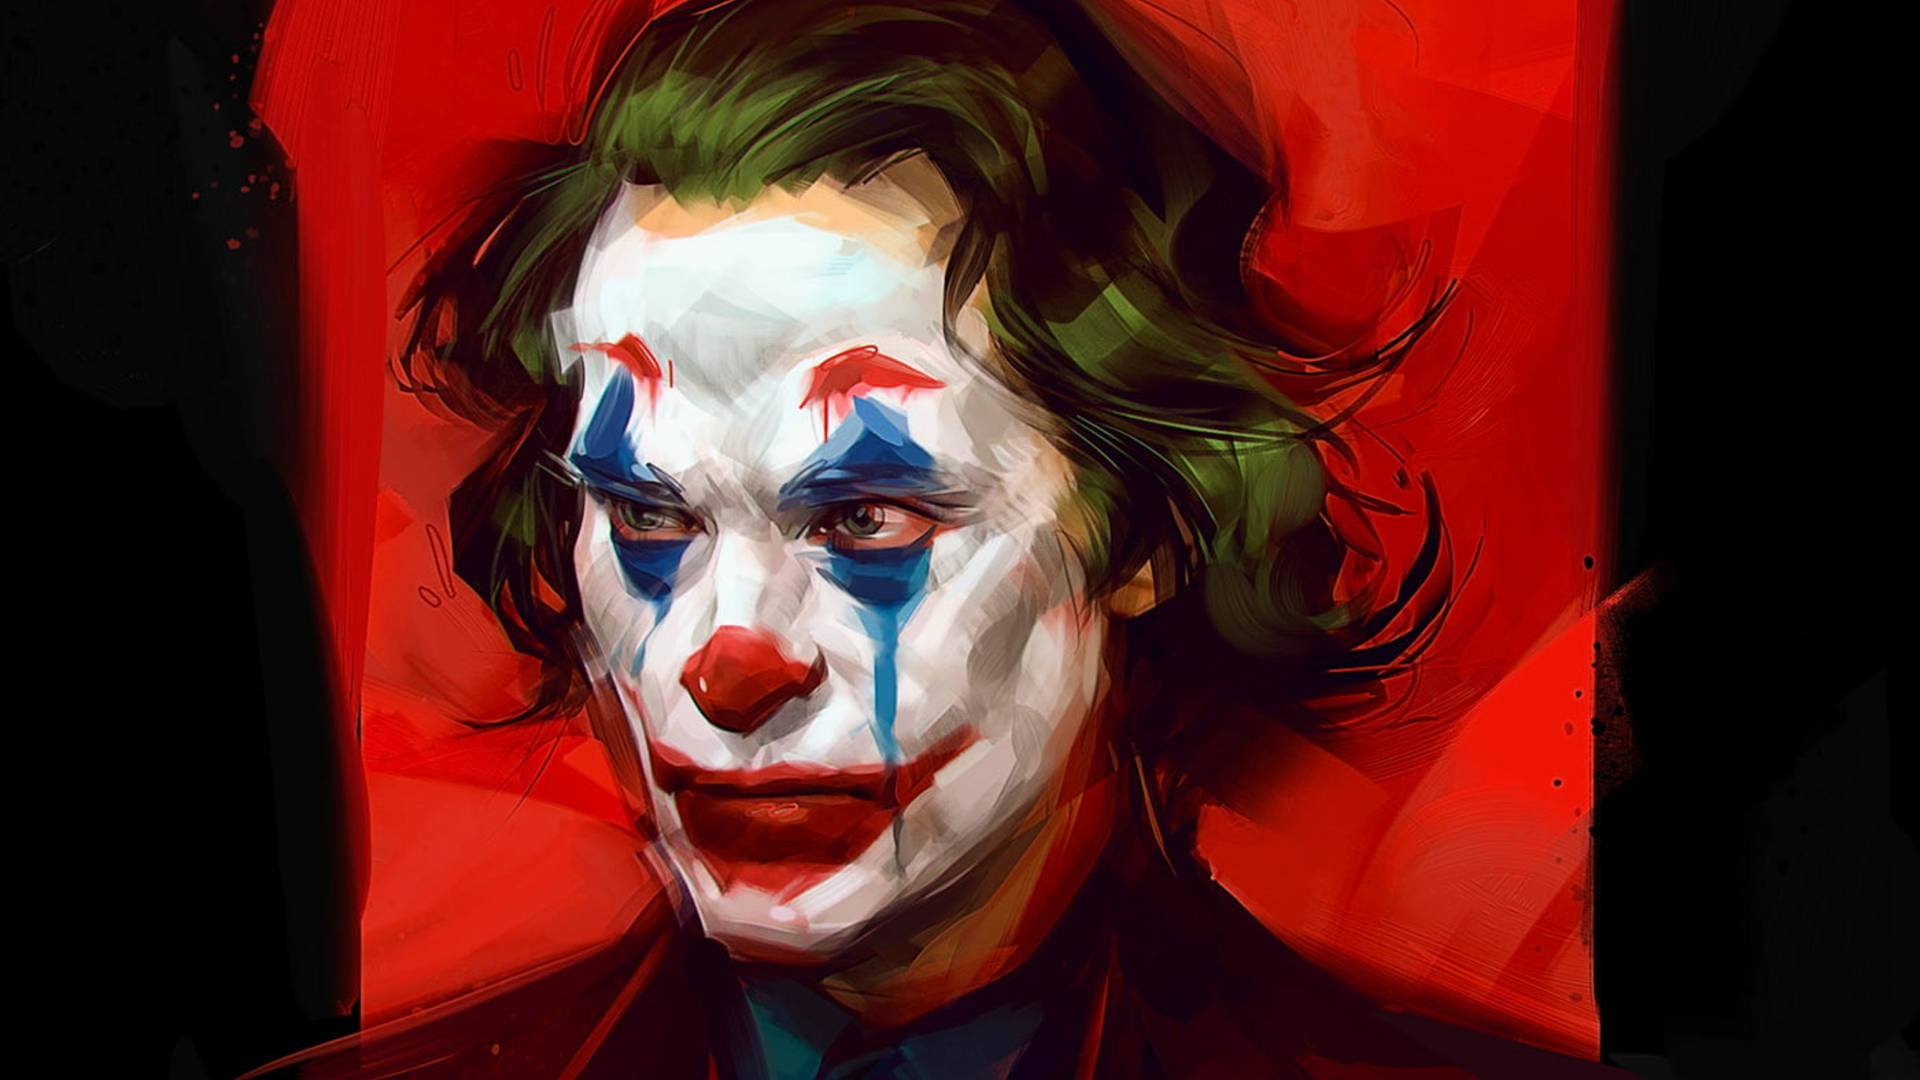 Jokerzeichnung Von Viktor Miller Gausa. Wallpaper